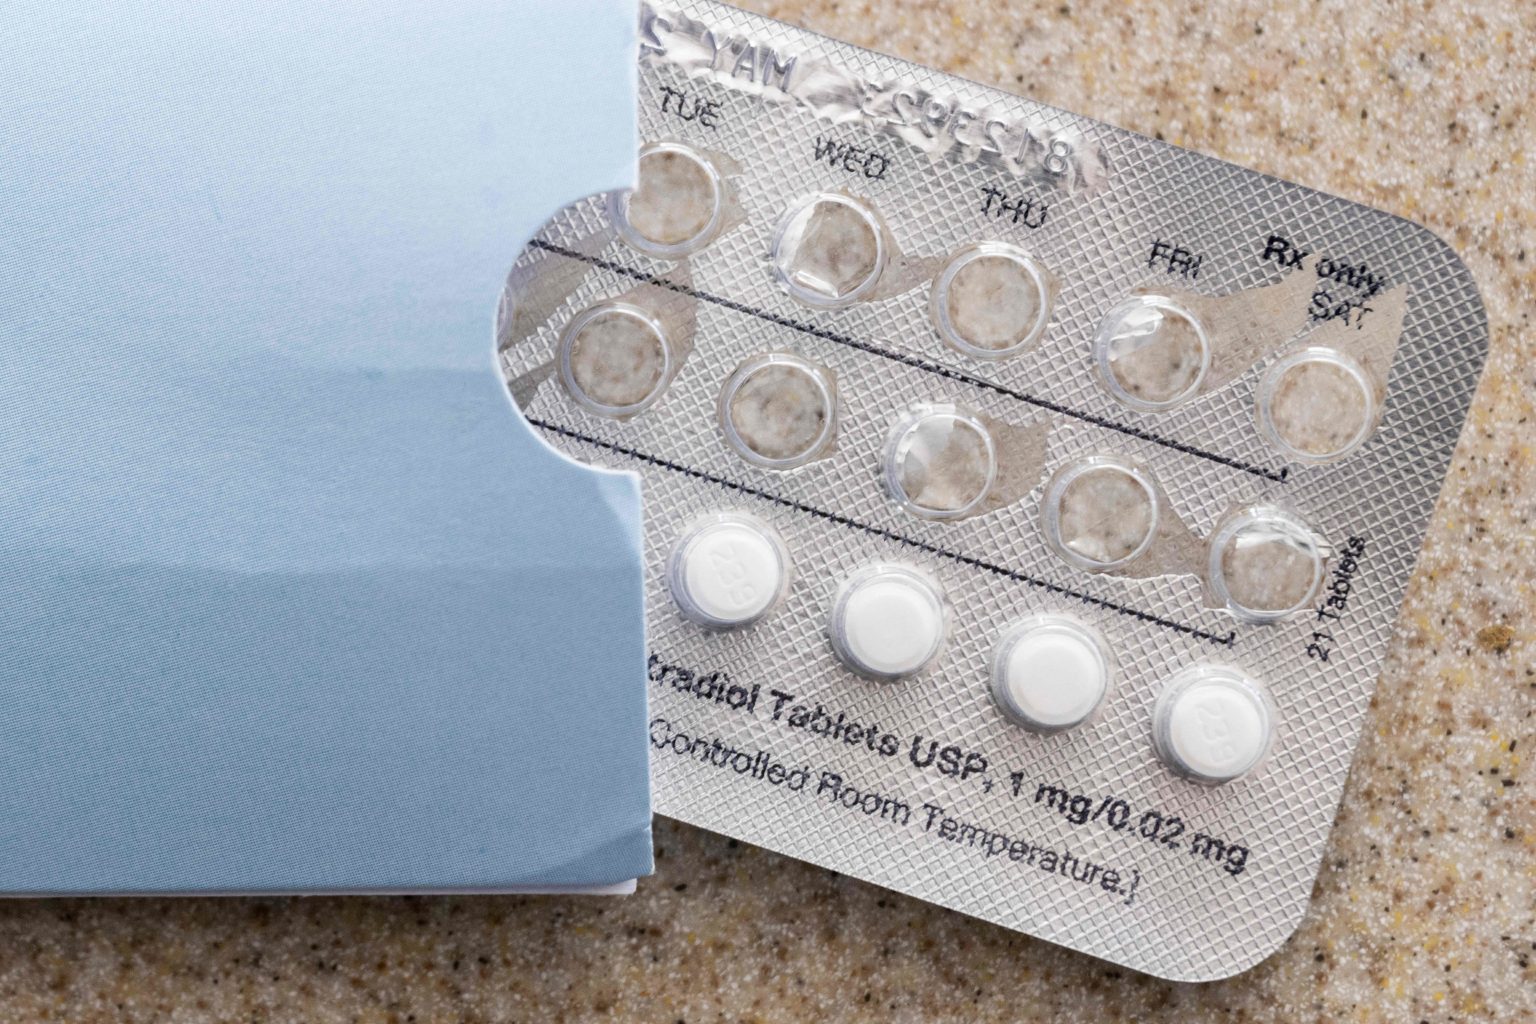 La loi fédérale stipule que les pharmacies doivent remplir la contraception et la pilule abortive Rx